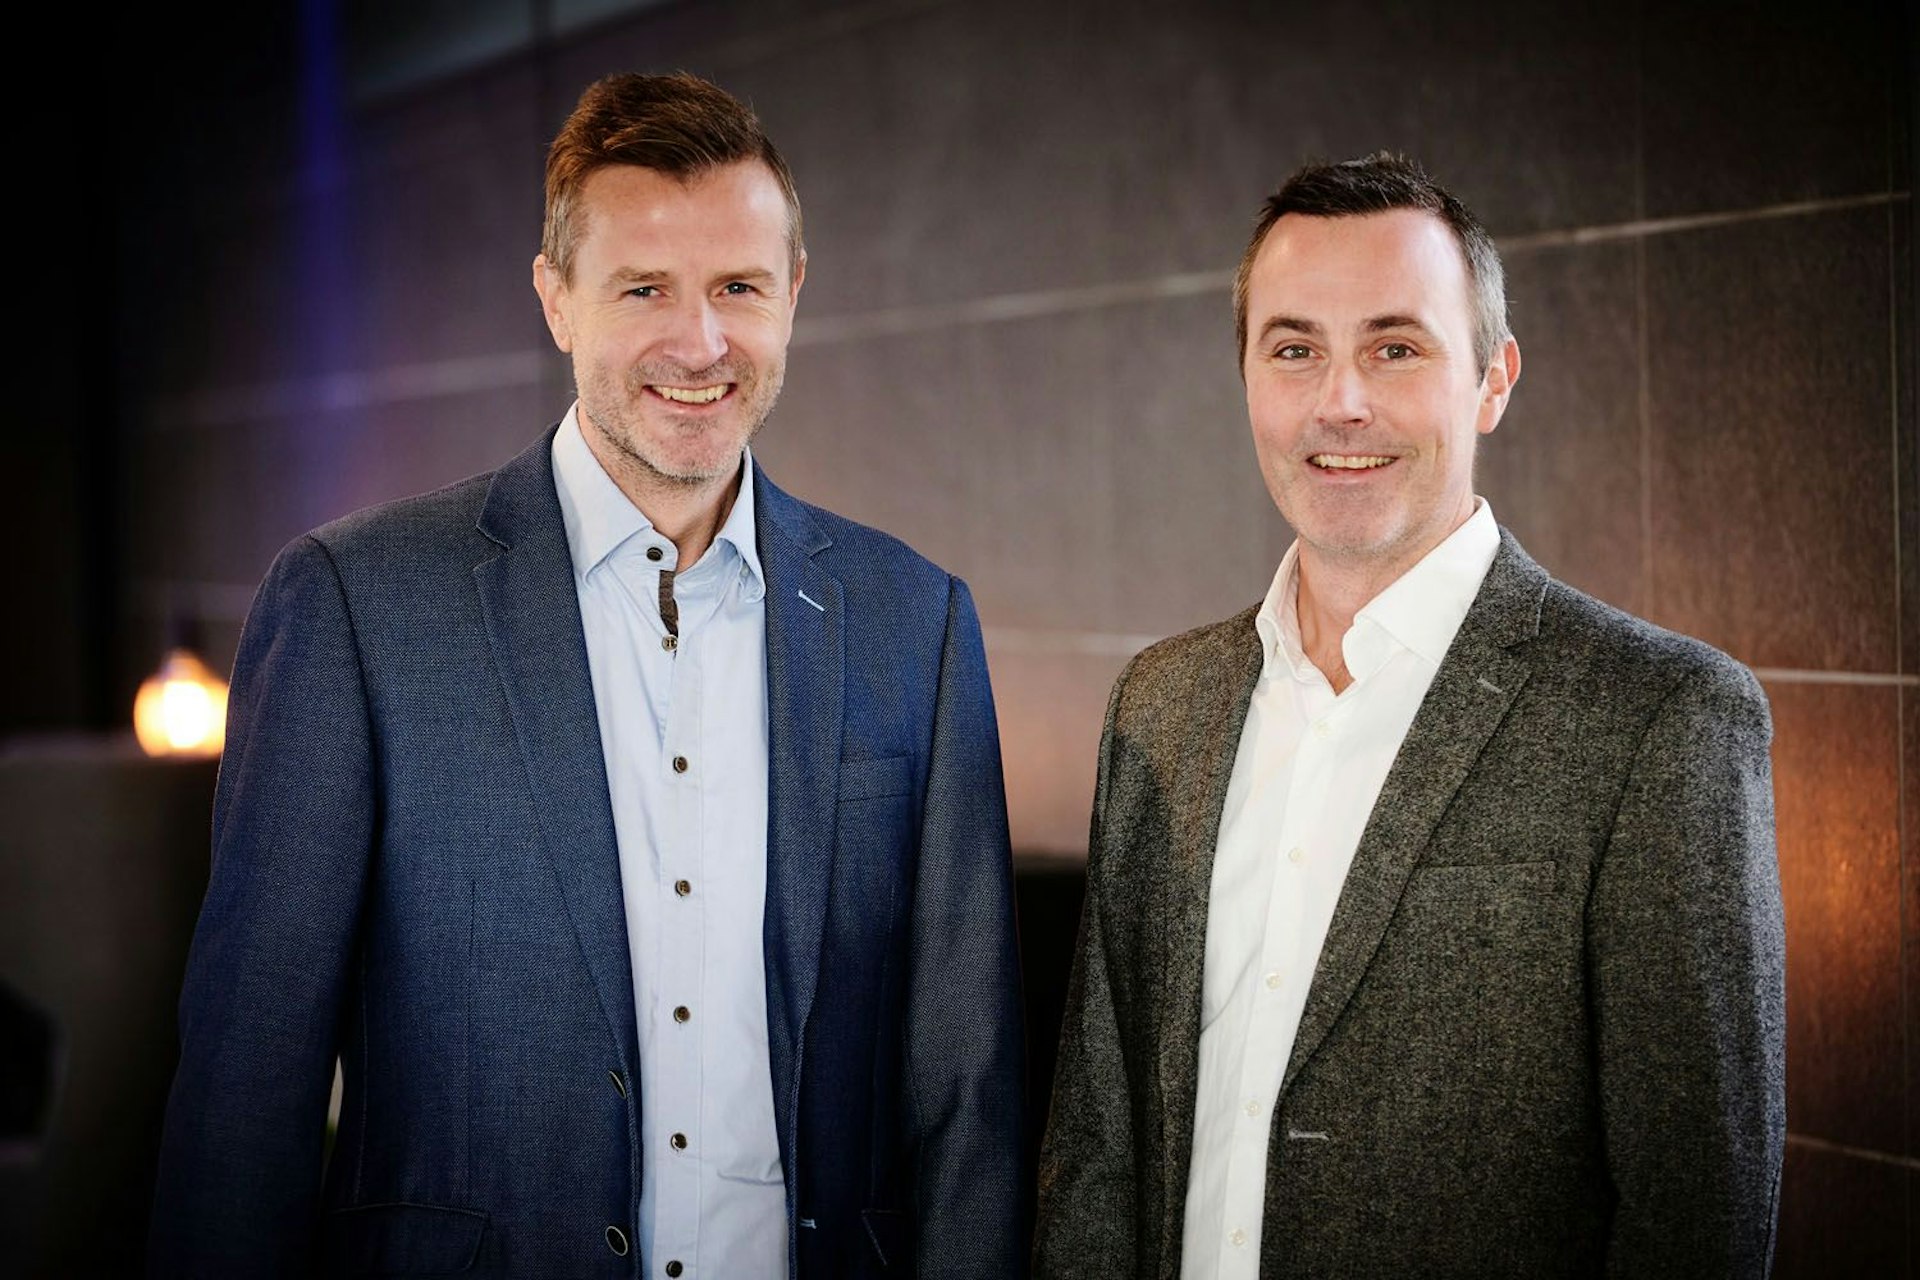 Thomas Knudsen og Morten Lanng - stiftere af ePay